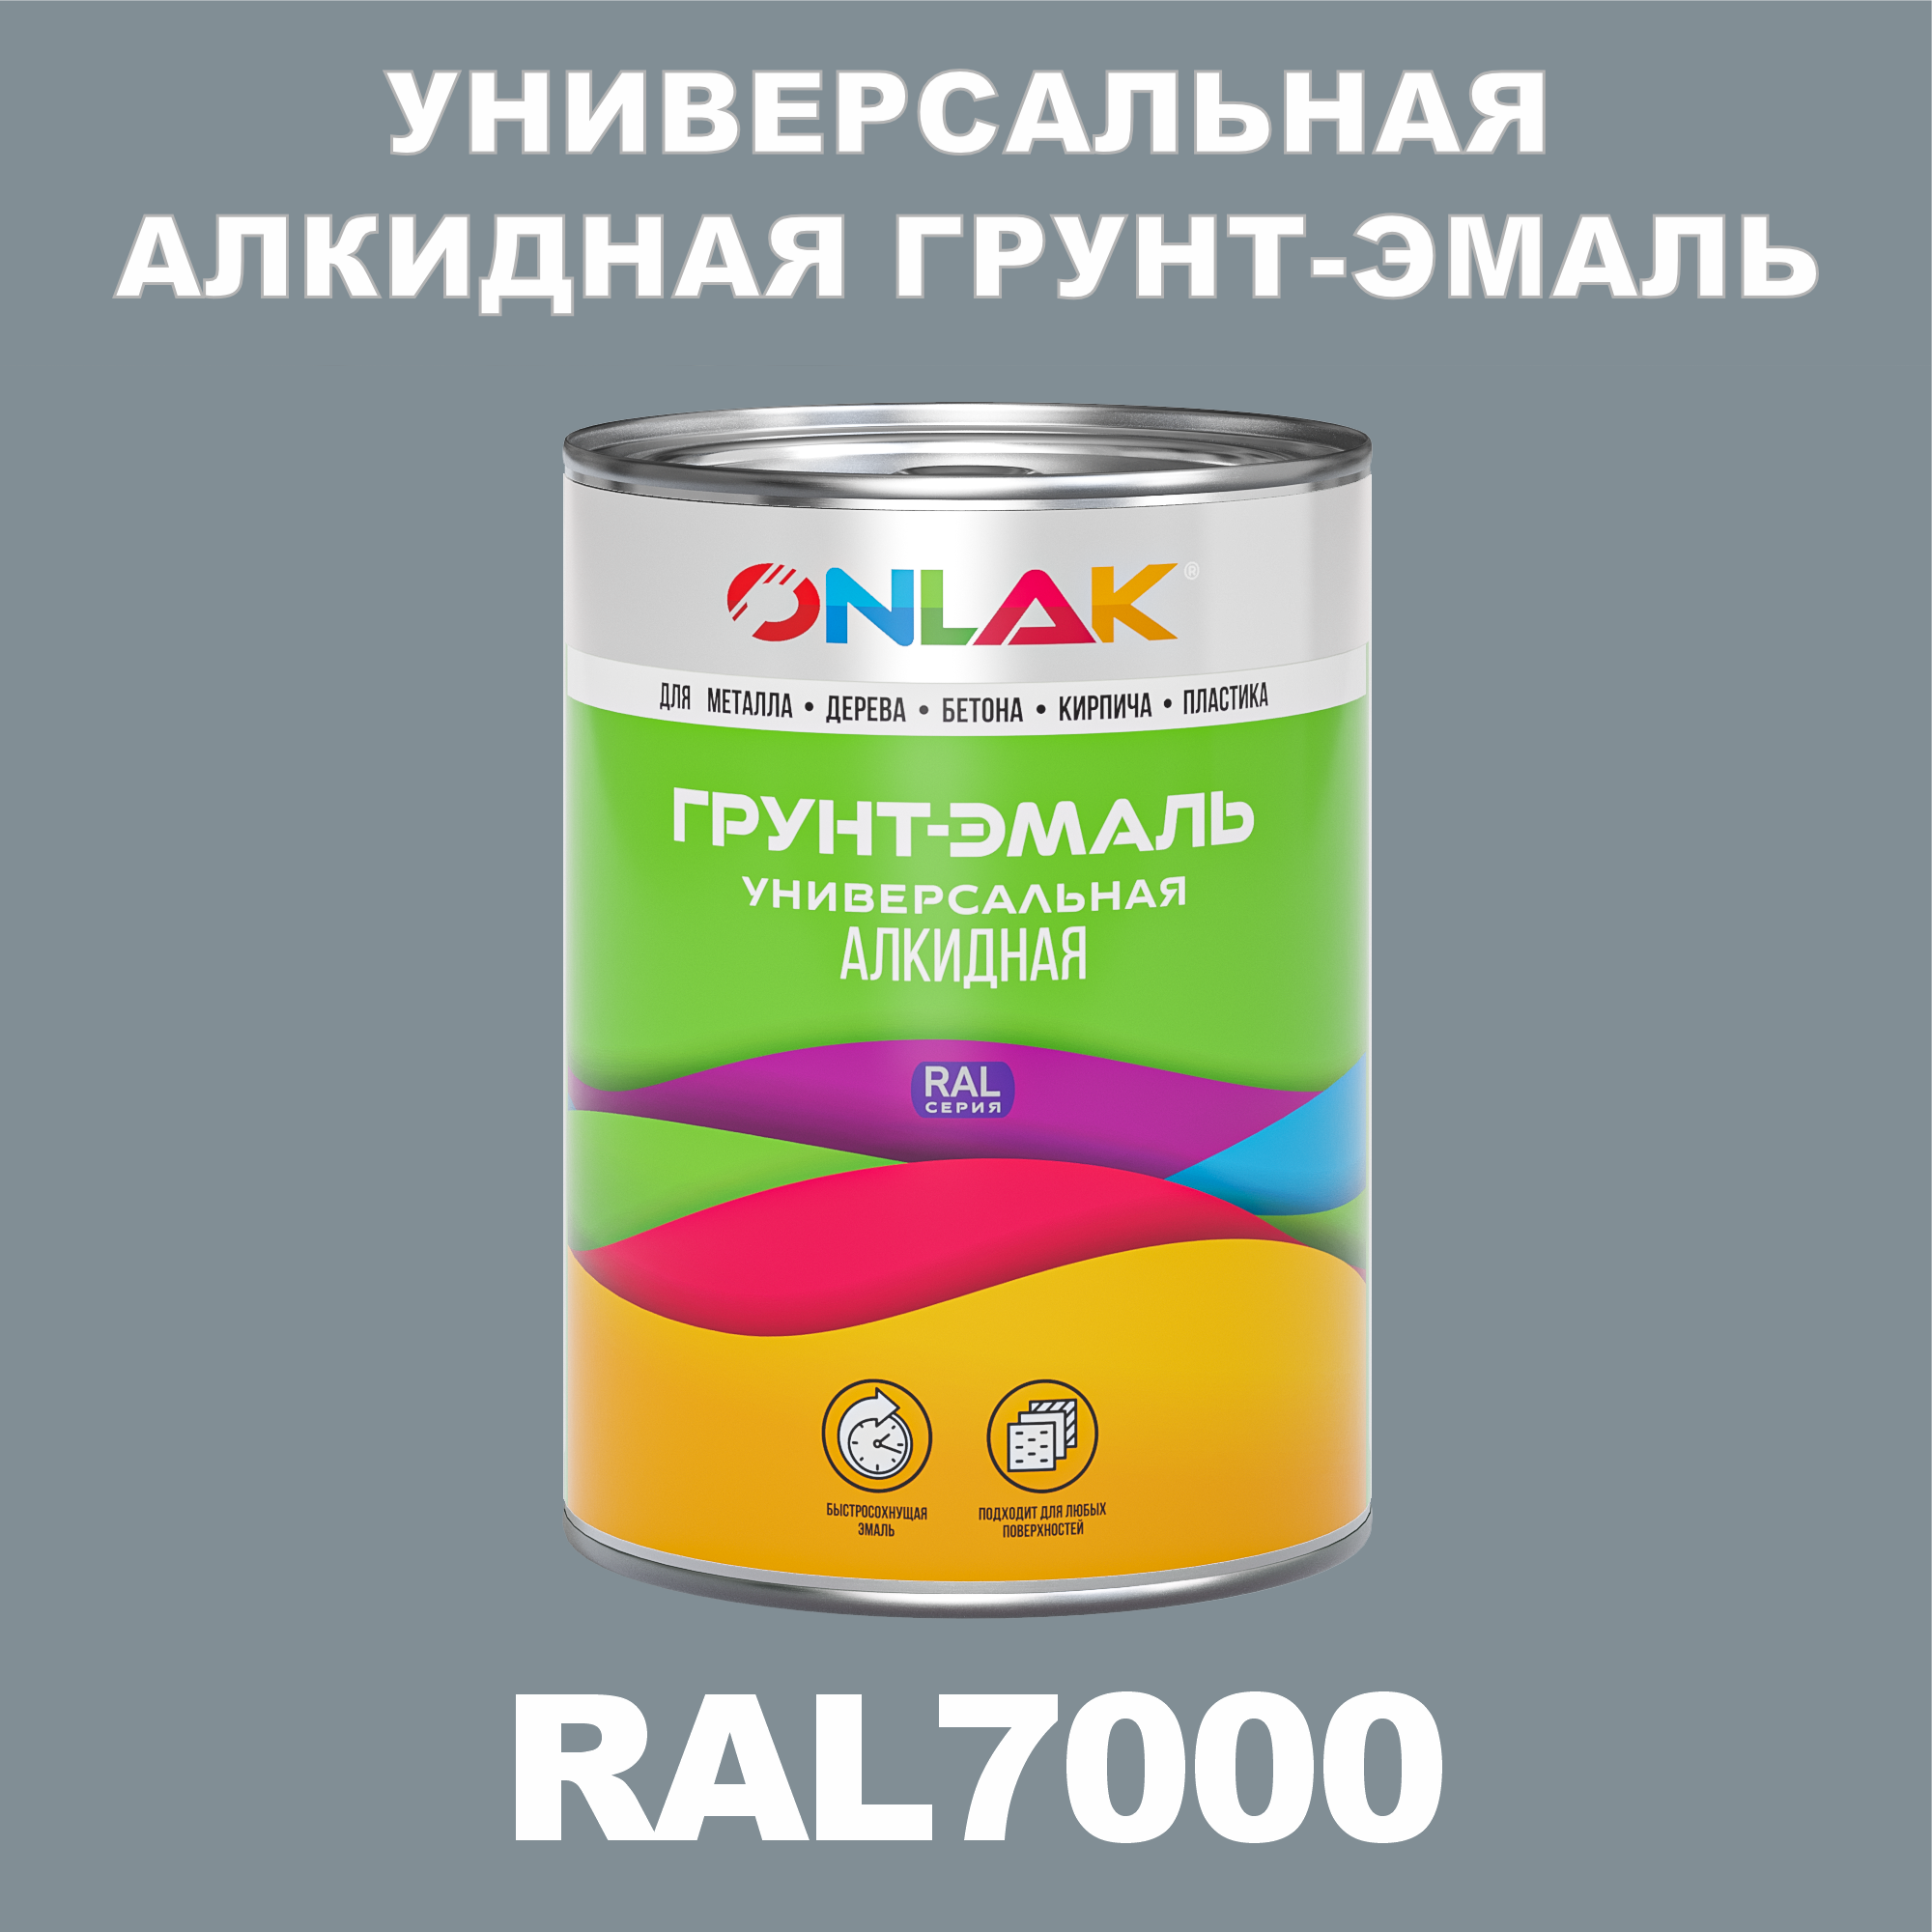 Грунт-эмаль ONLAK 1К RAL7000 антикоррозионная алкидная по металлу по ржавчине 1 кг грунт эмаль yollo по ржавчине алкидная зеленая 0 9 кг